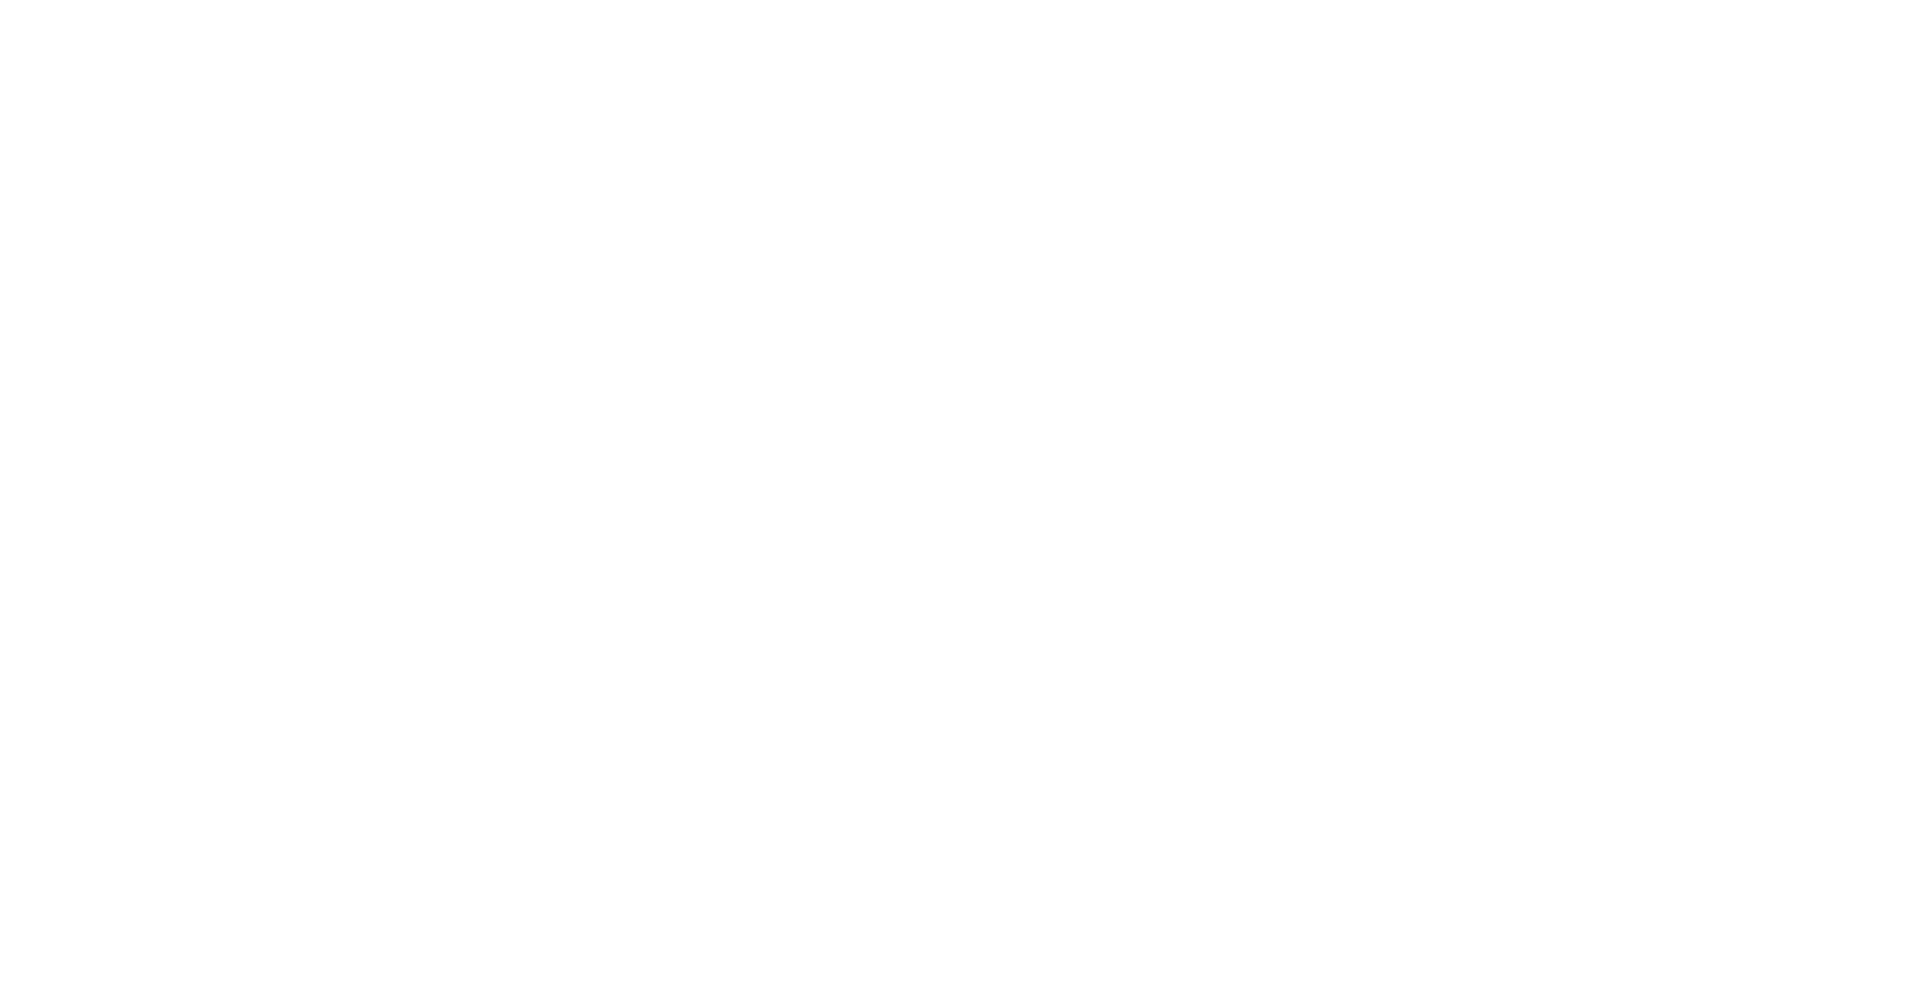 пиксельный логотип в стиле майнкрафт